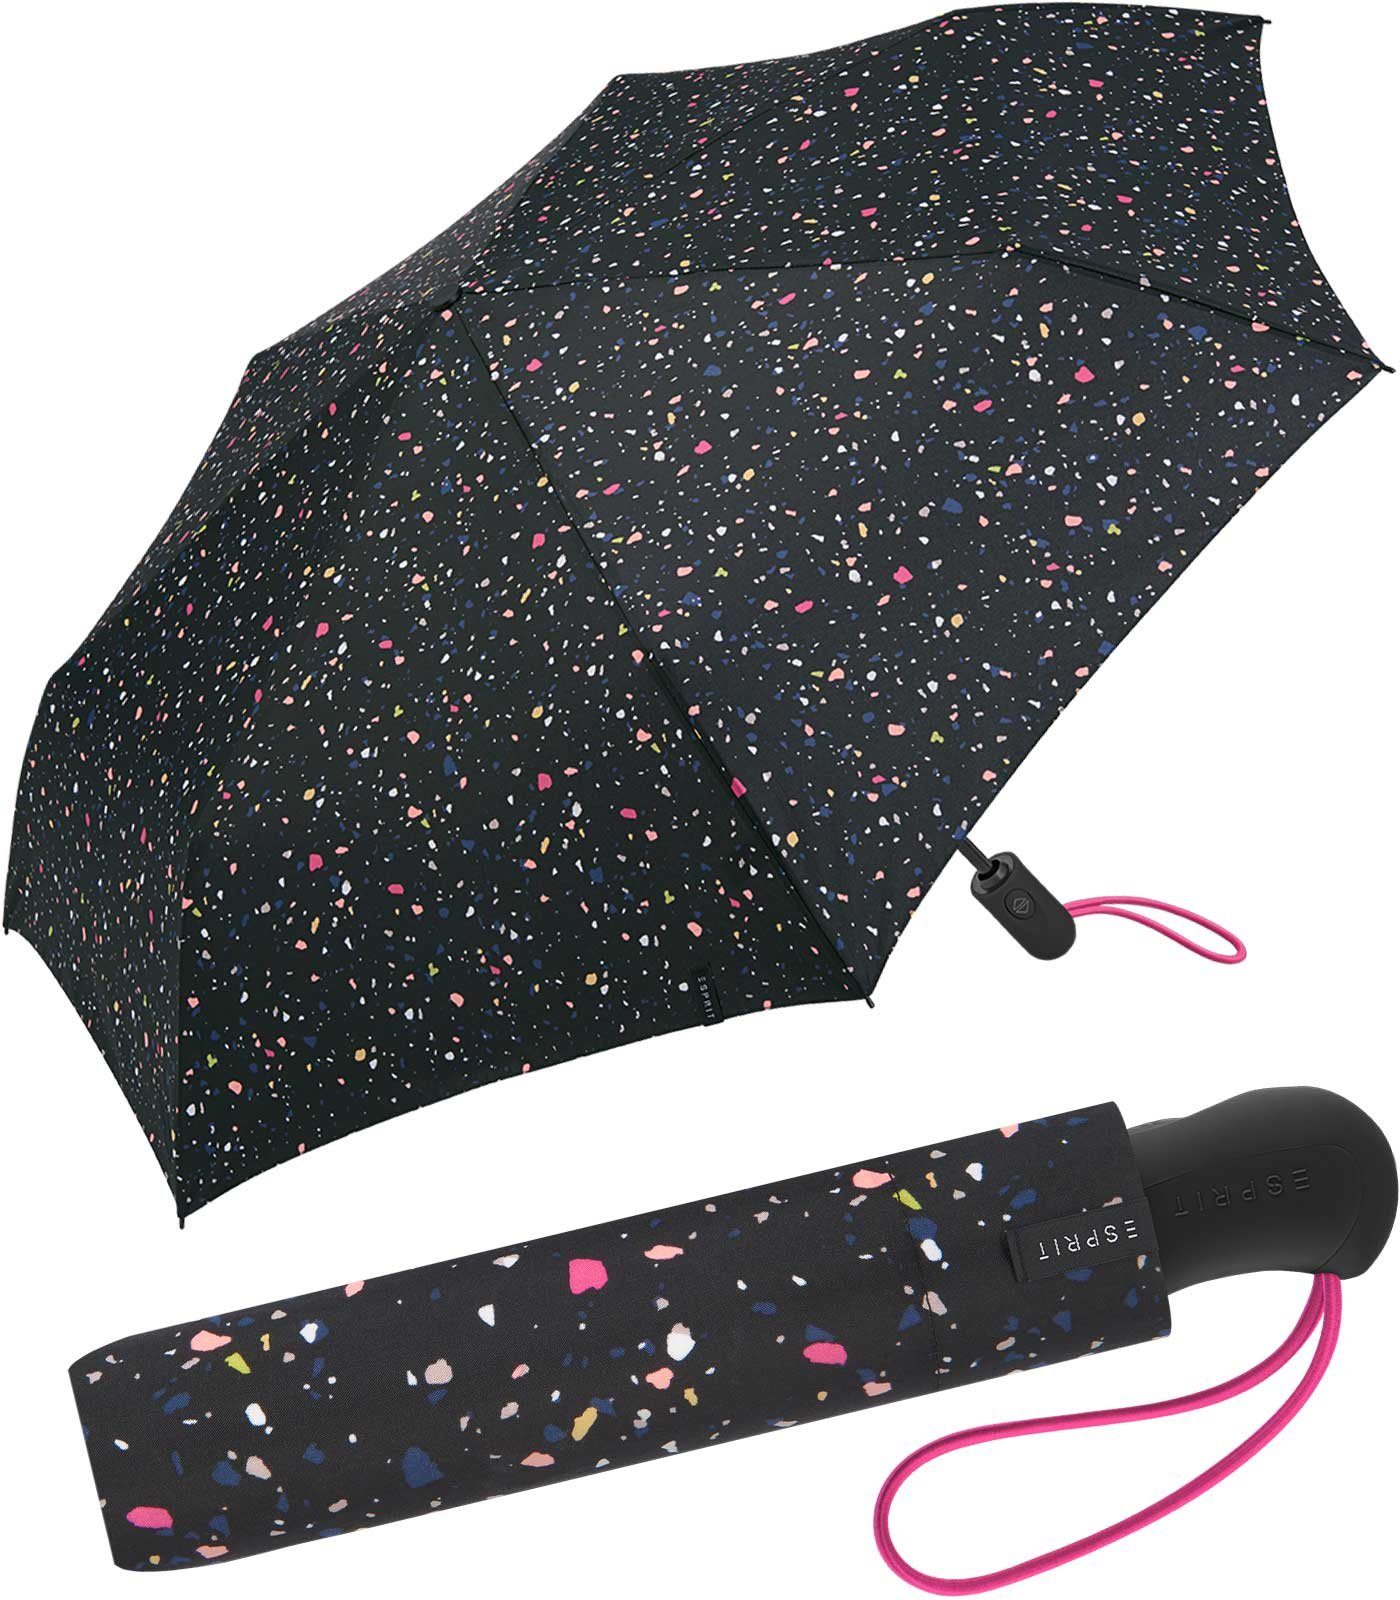 Esprit Taschenregenschirm Easymatic Light - Terrazzo Dots - schwarz, stabil, praktisch, mit Auf-Zu-Automatik